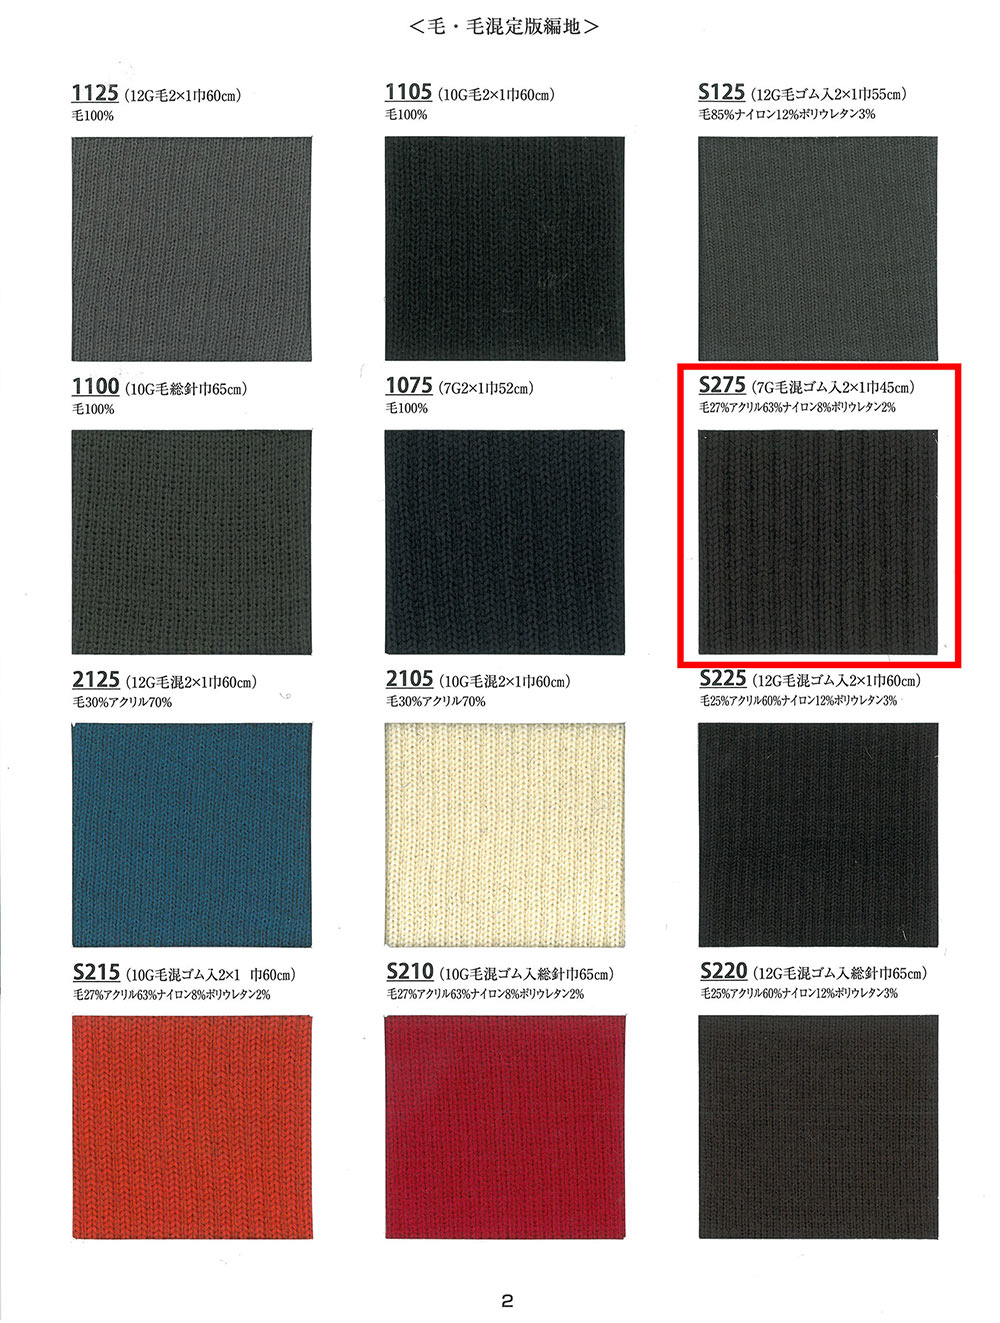 S275 針織羅紋7G 羊毛混紡跨度 2x1